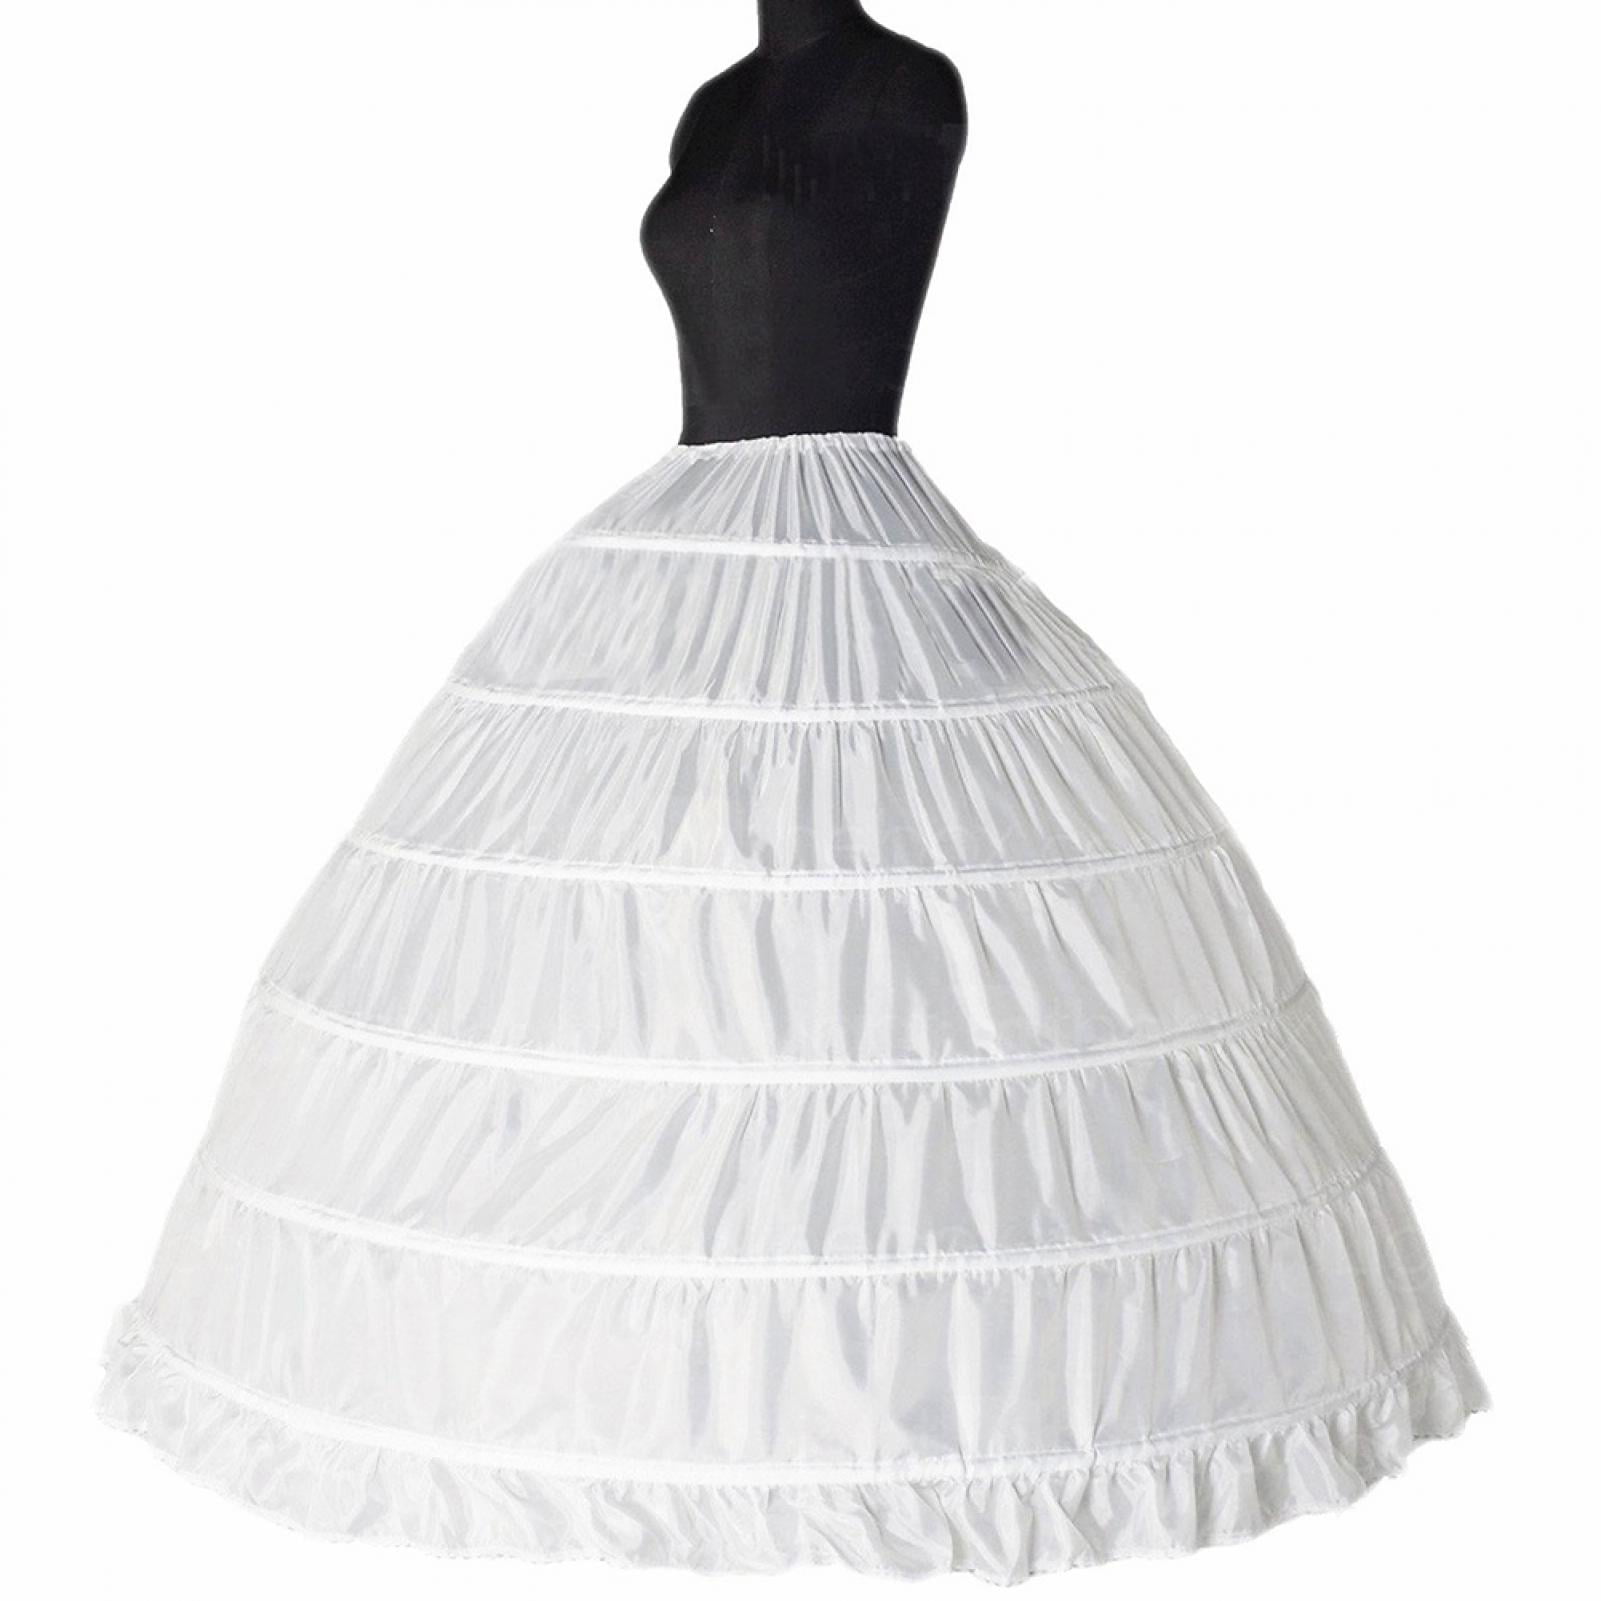 NEW white/black 6 Hoop wedding PETTICOAT UNDERSKIRT Bridal Ball Gown slips US 